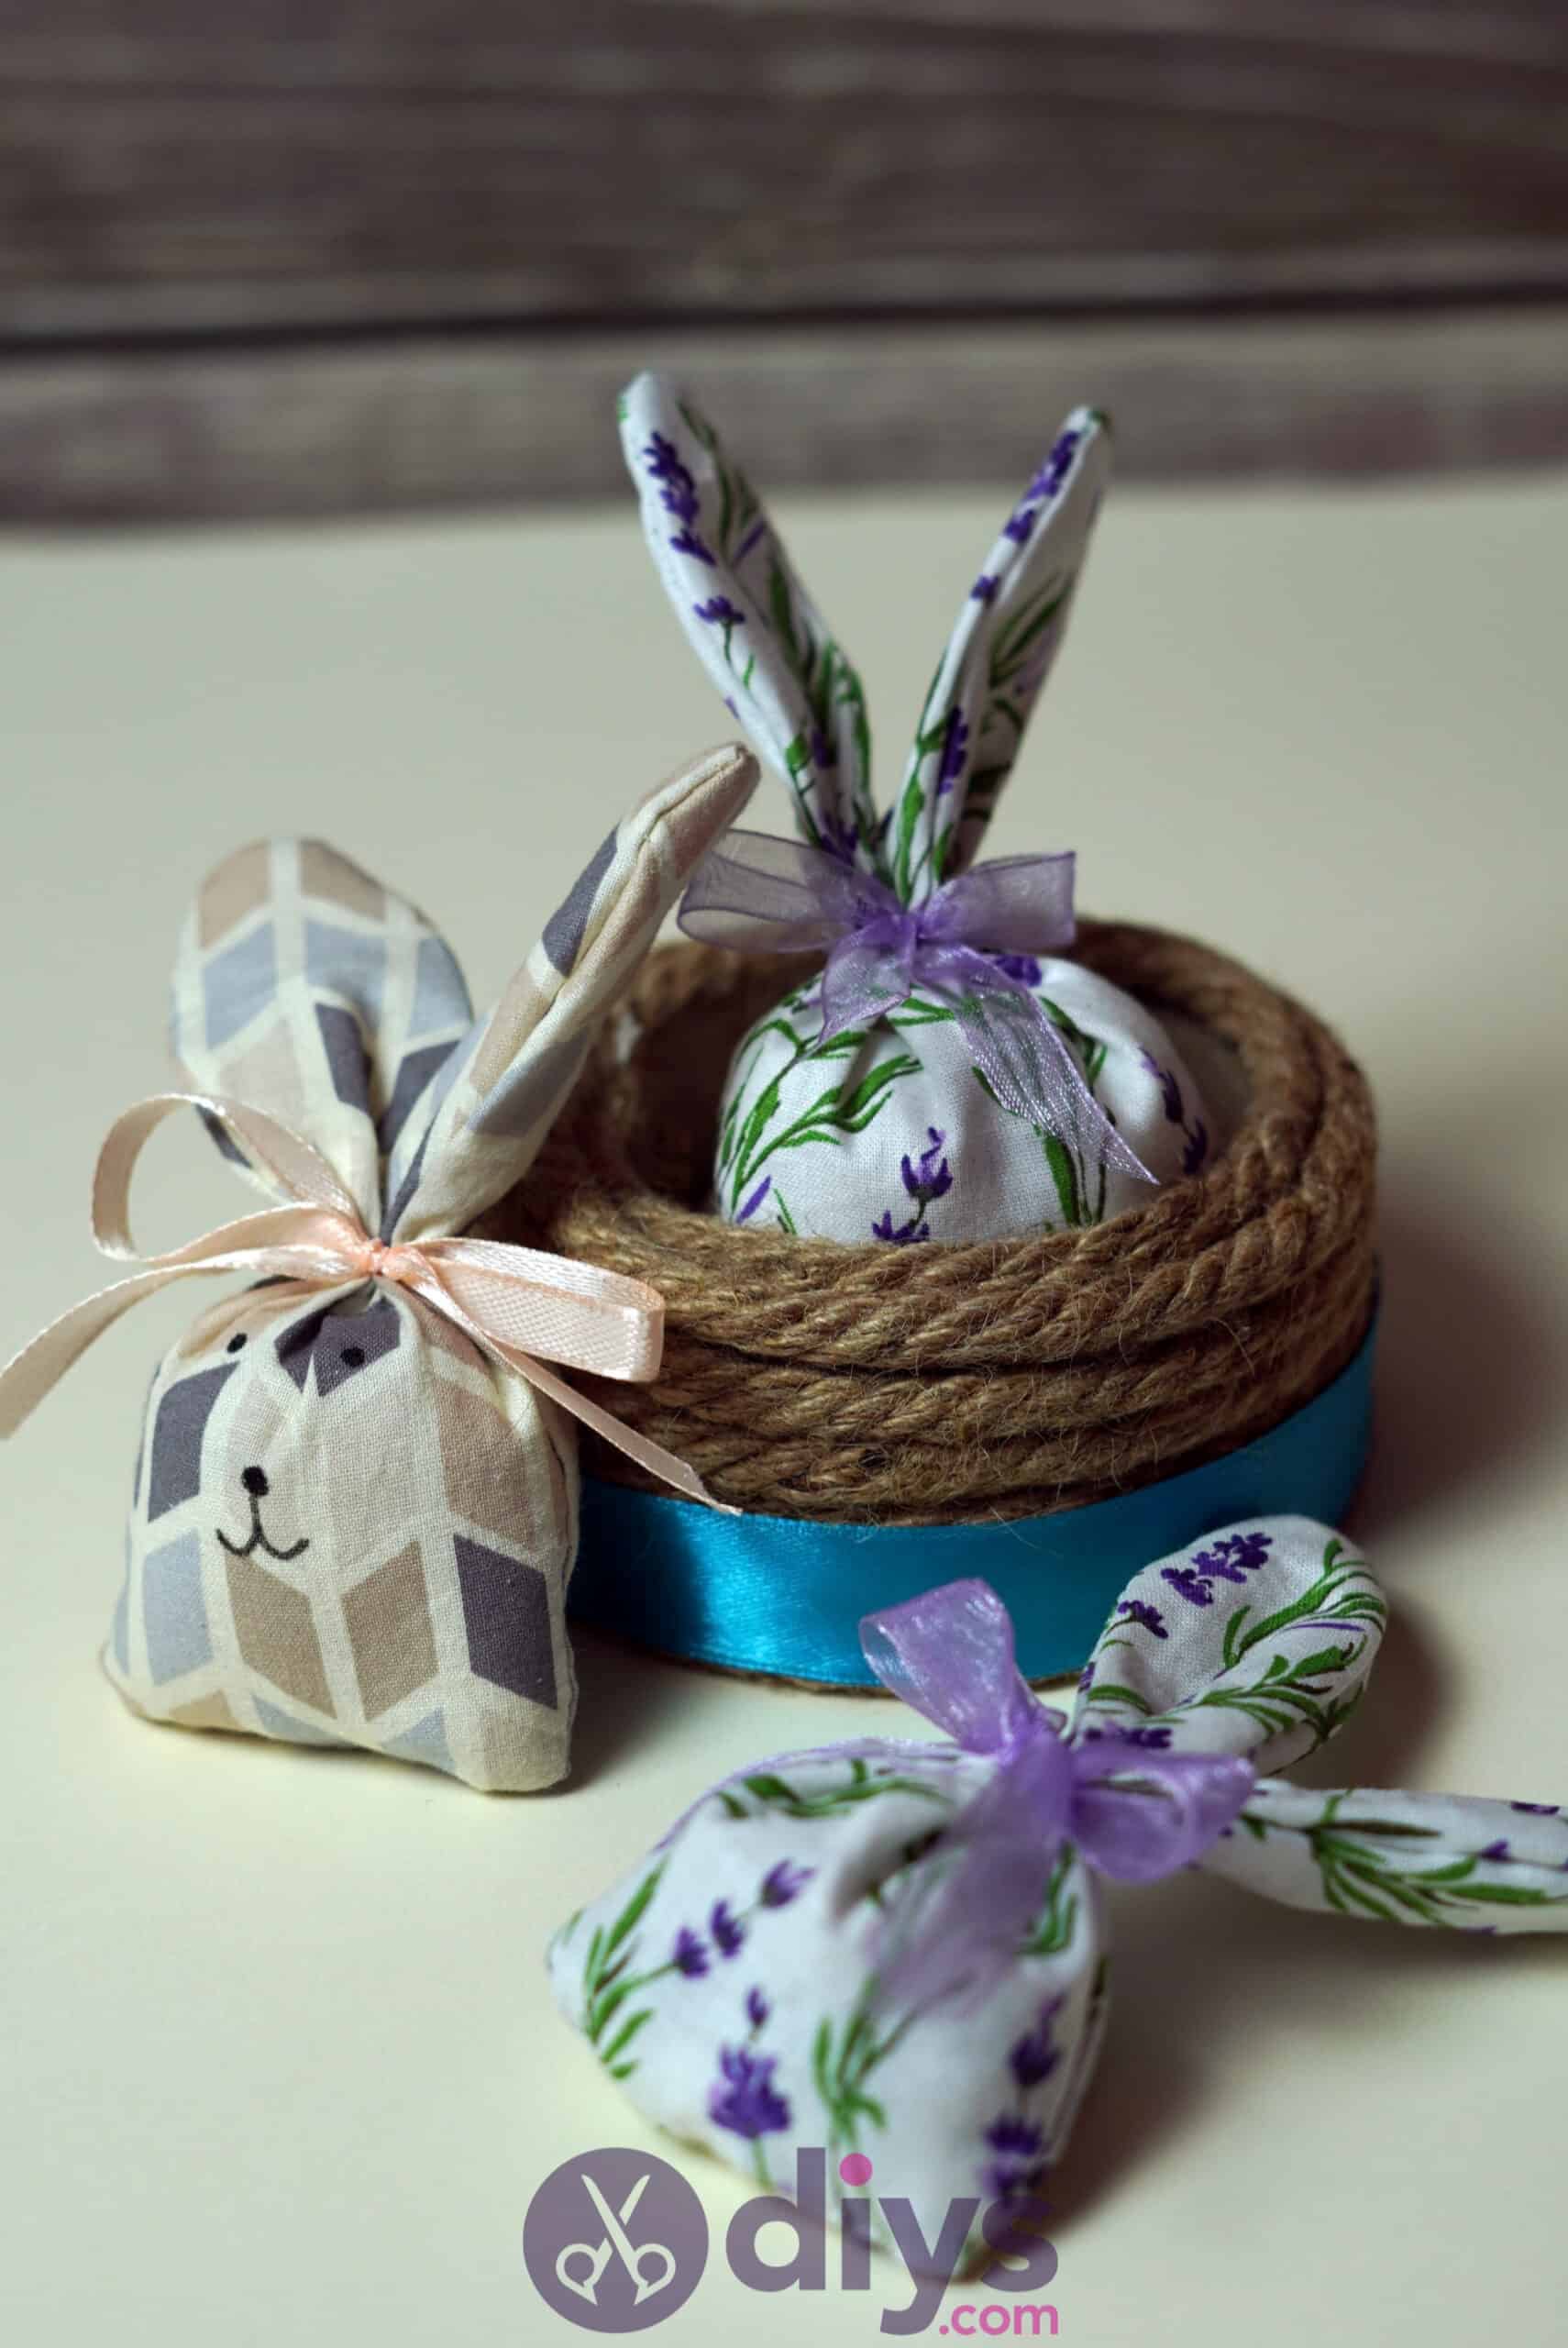 Bunny lavender bags diy